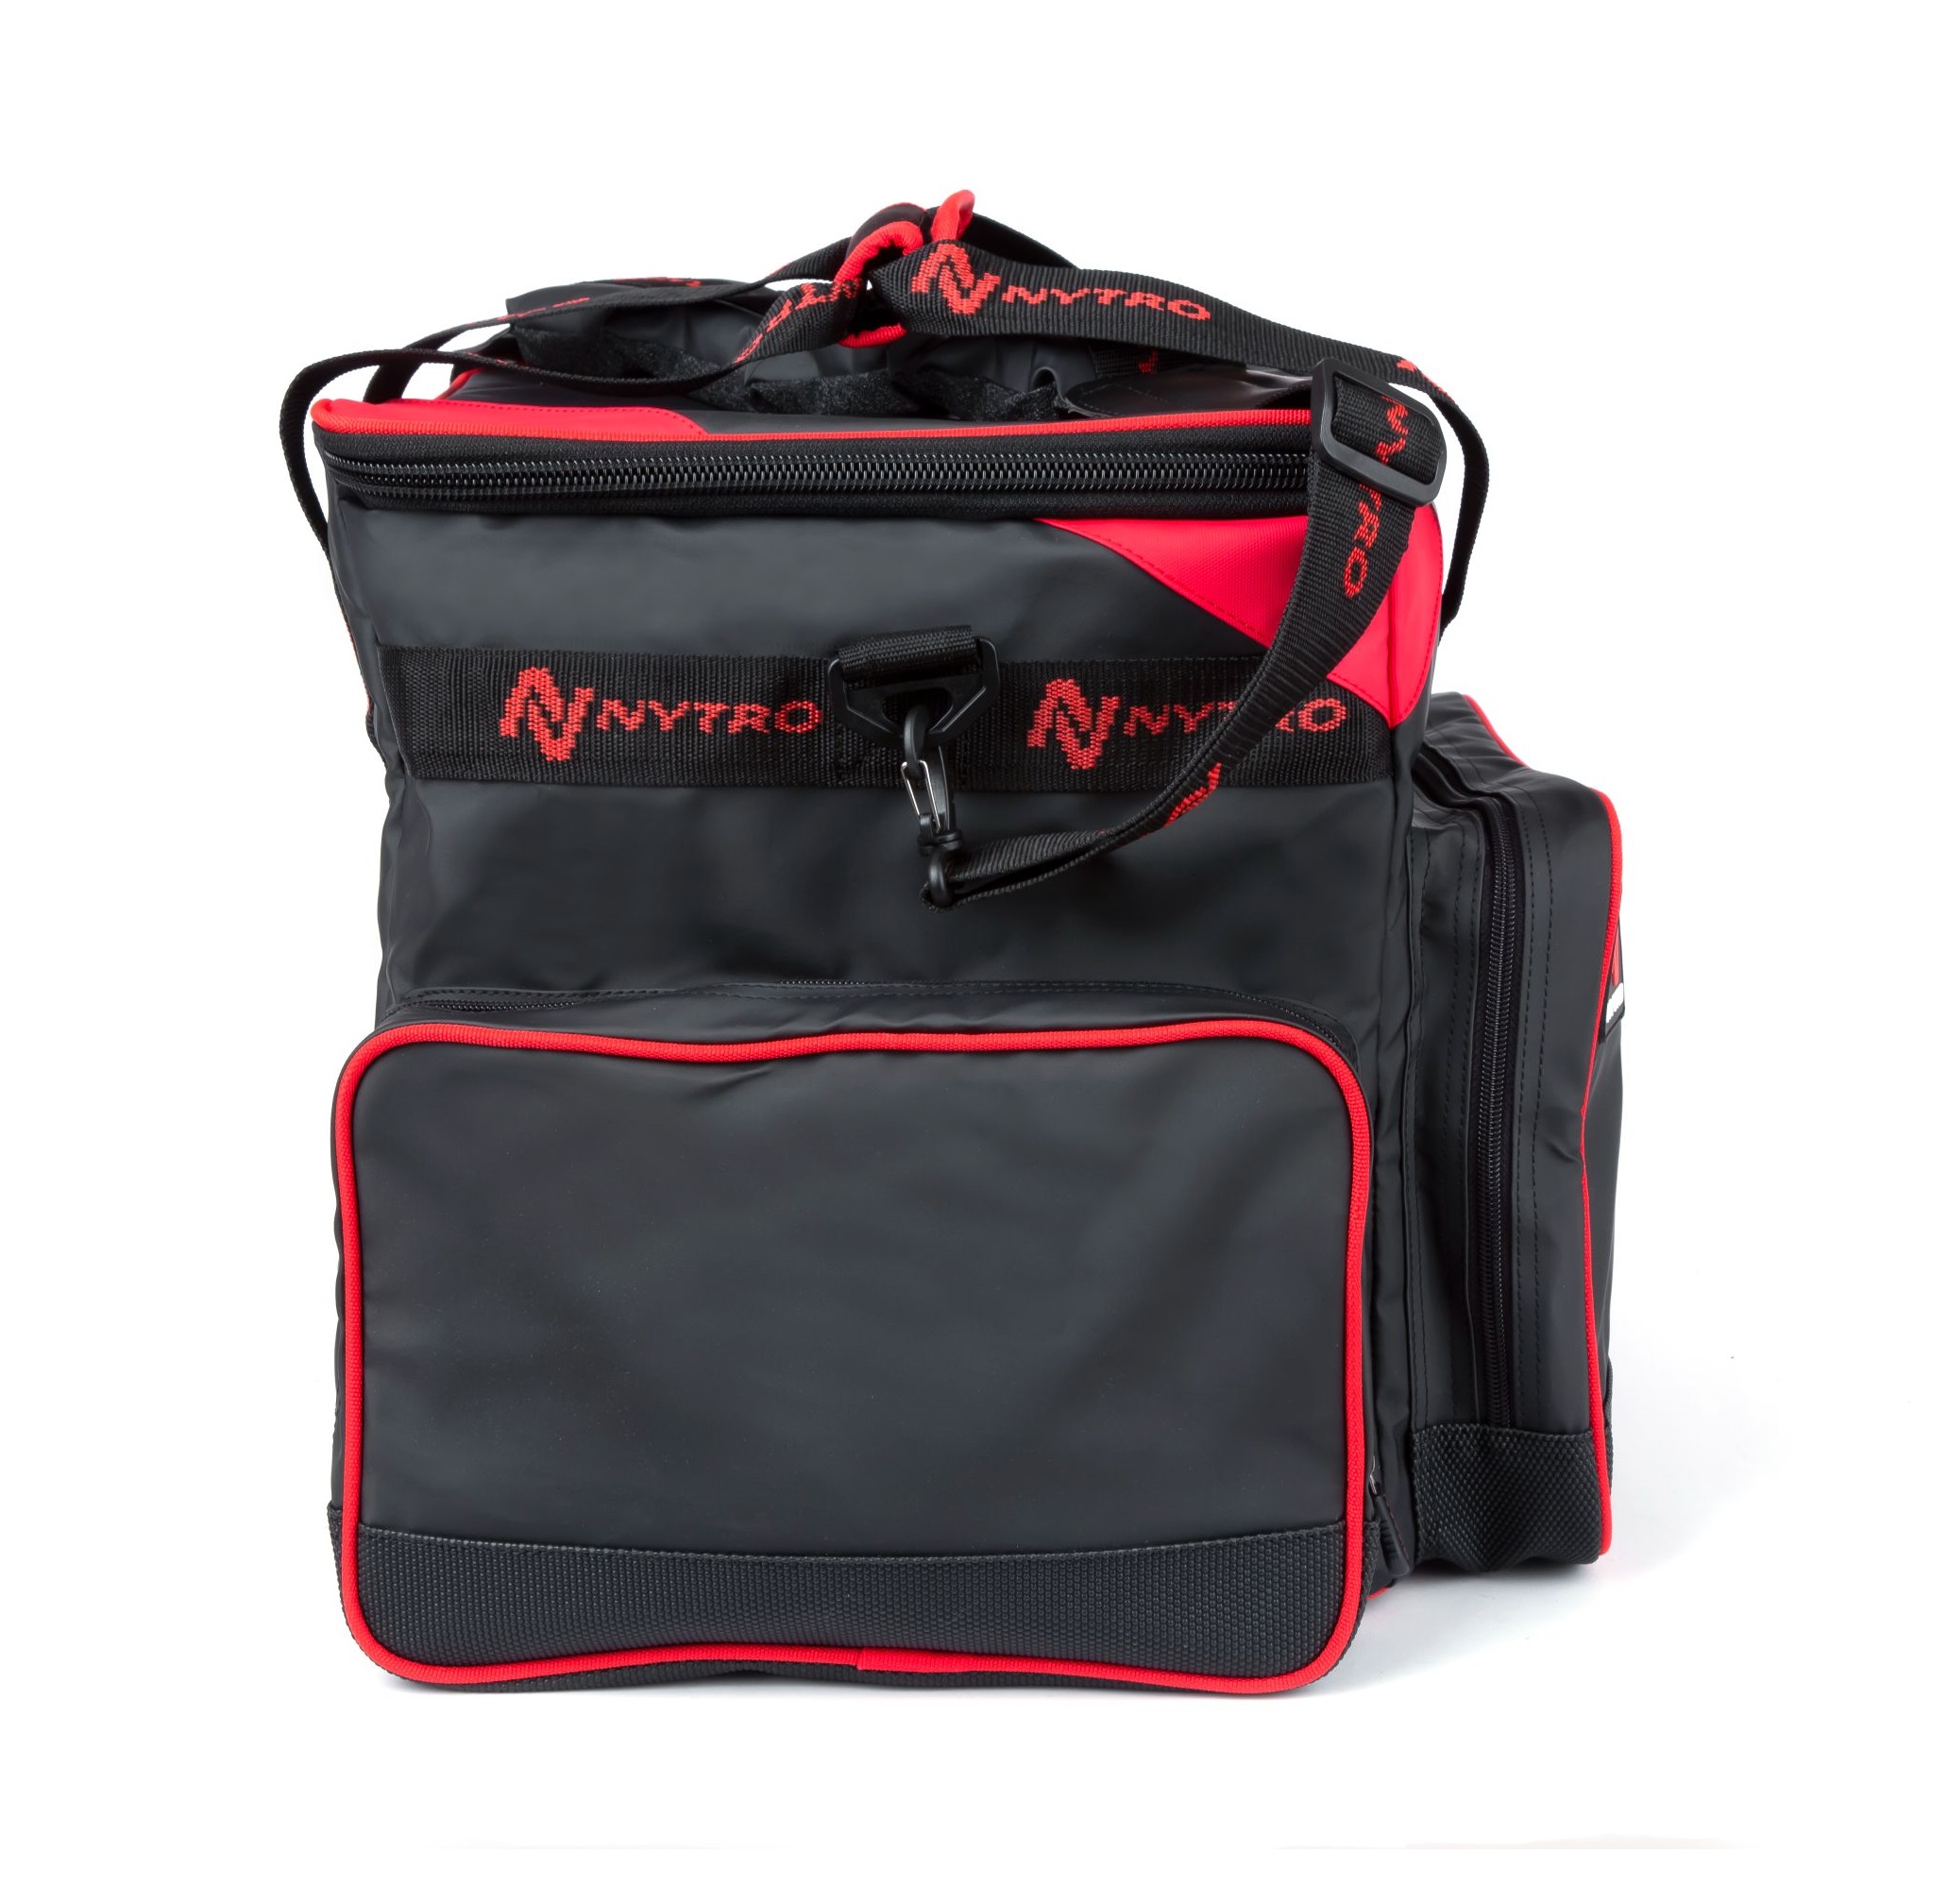 Nytro Sublime Feeder Box Bag